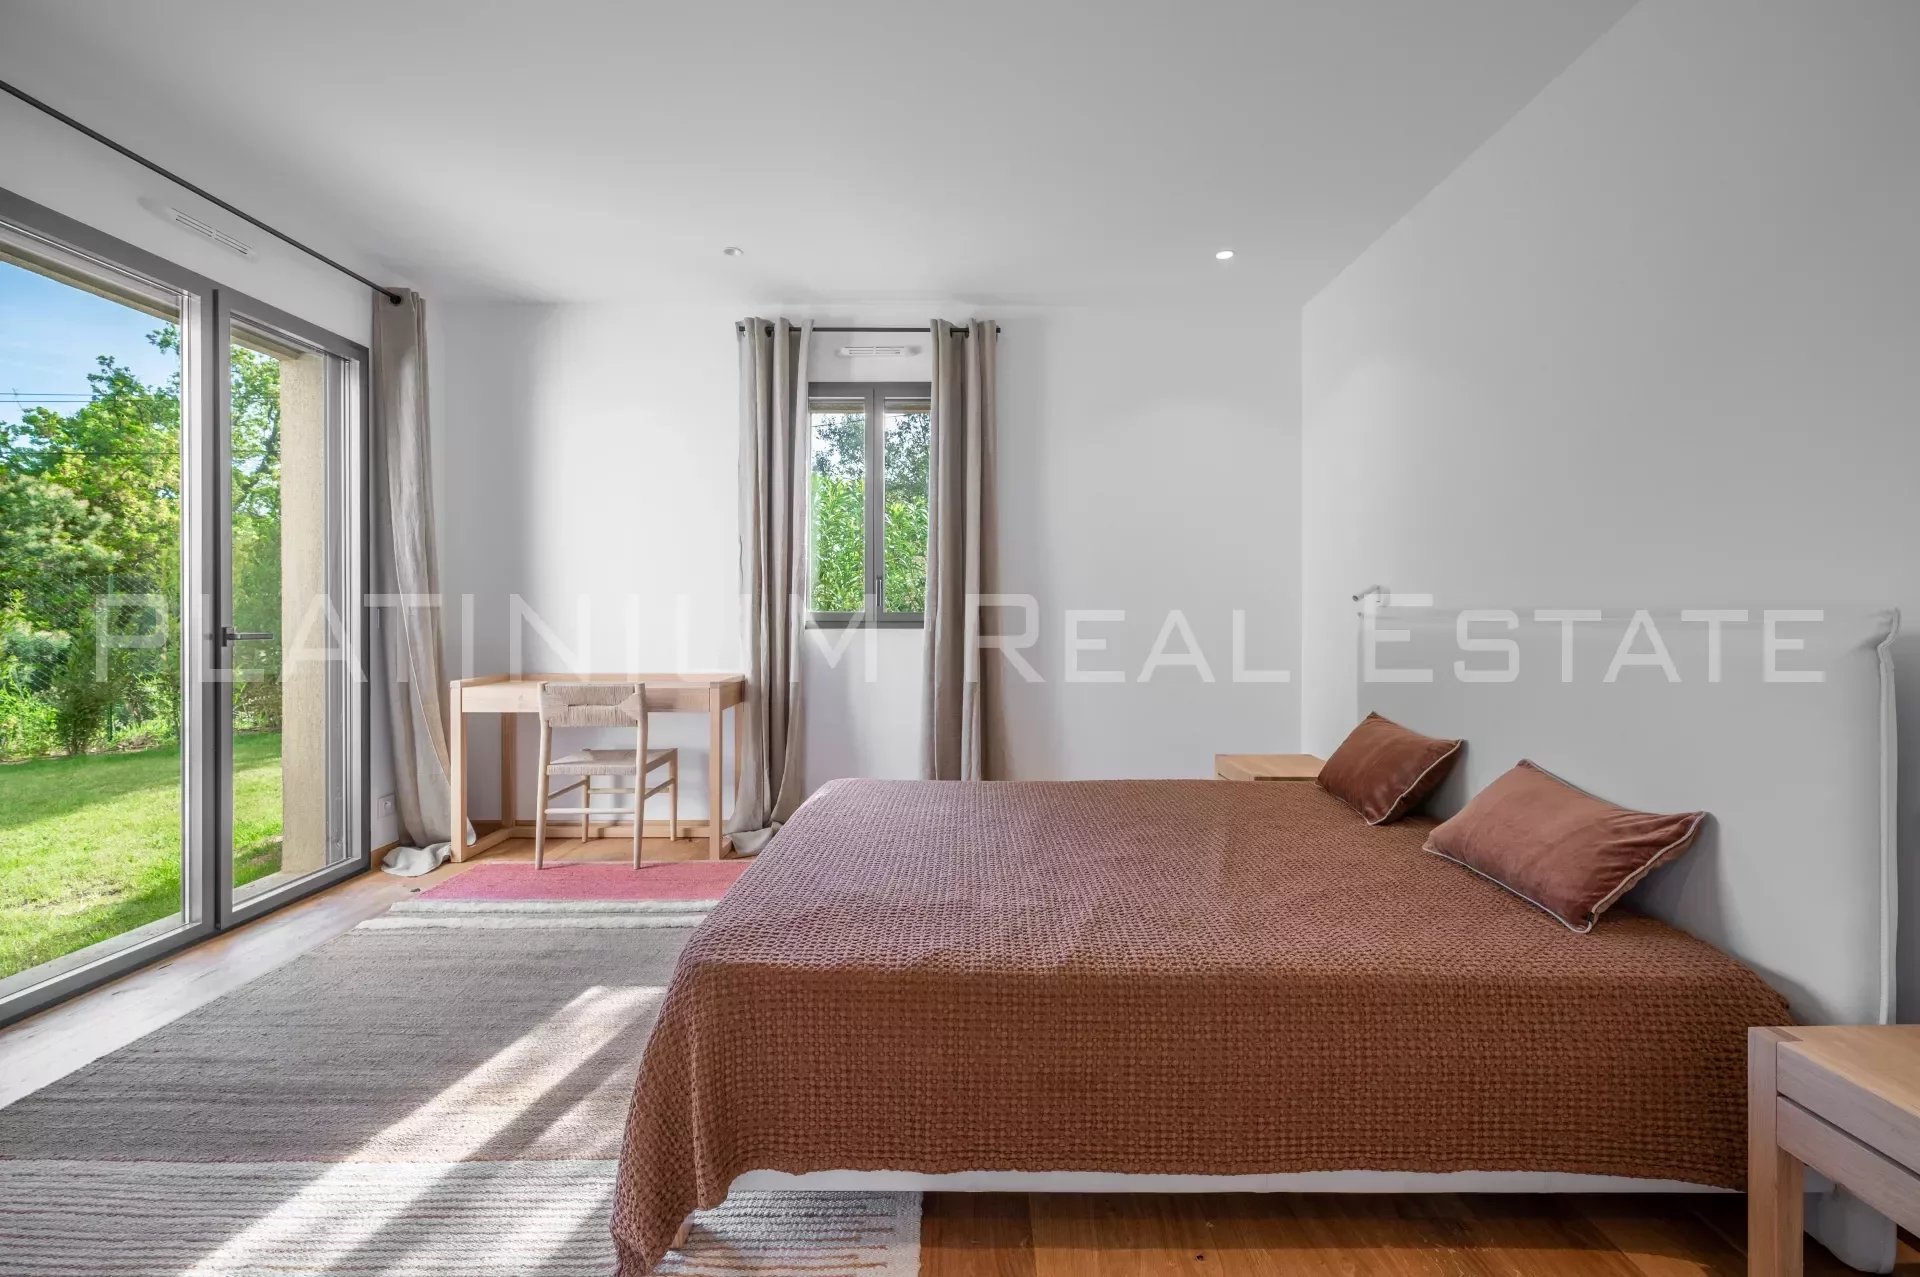 RAMATUELLE - Villa 340 m2 - Land of 3290 m2 - 4 bedrooms